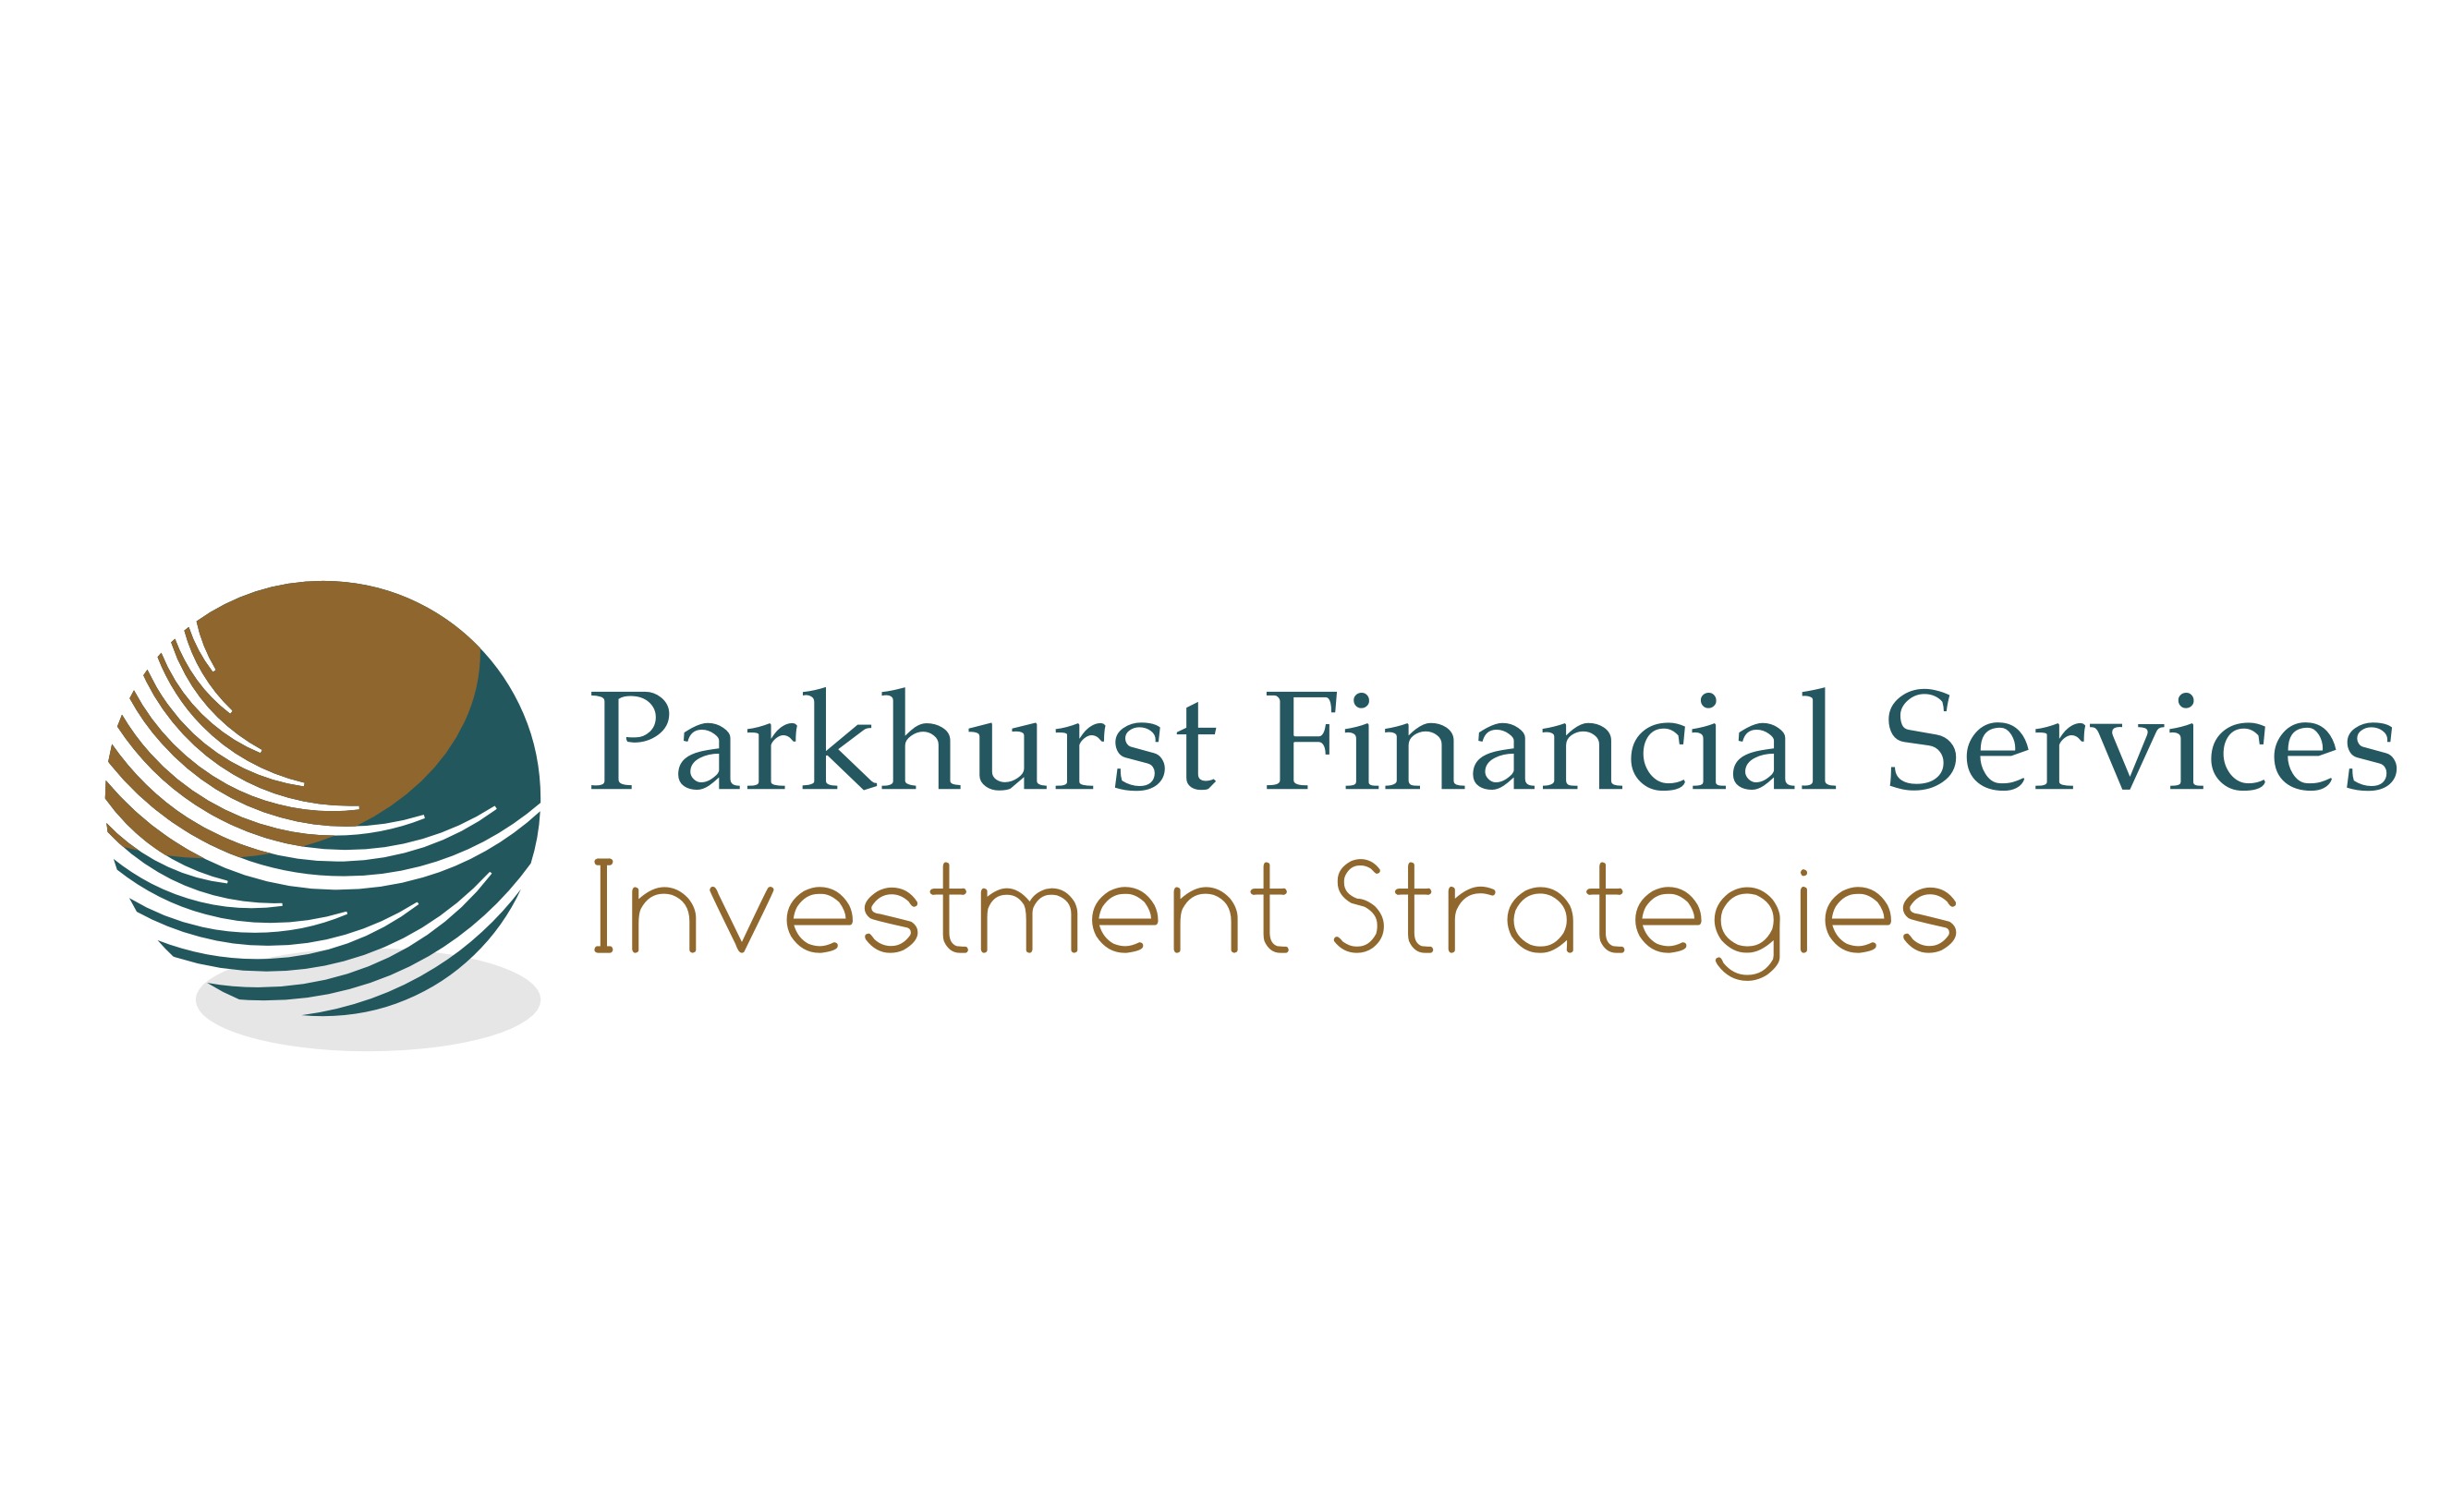 Parkhurst Financial Services